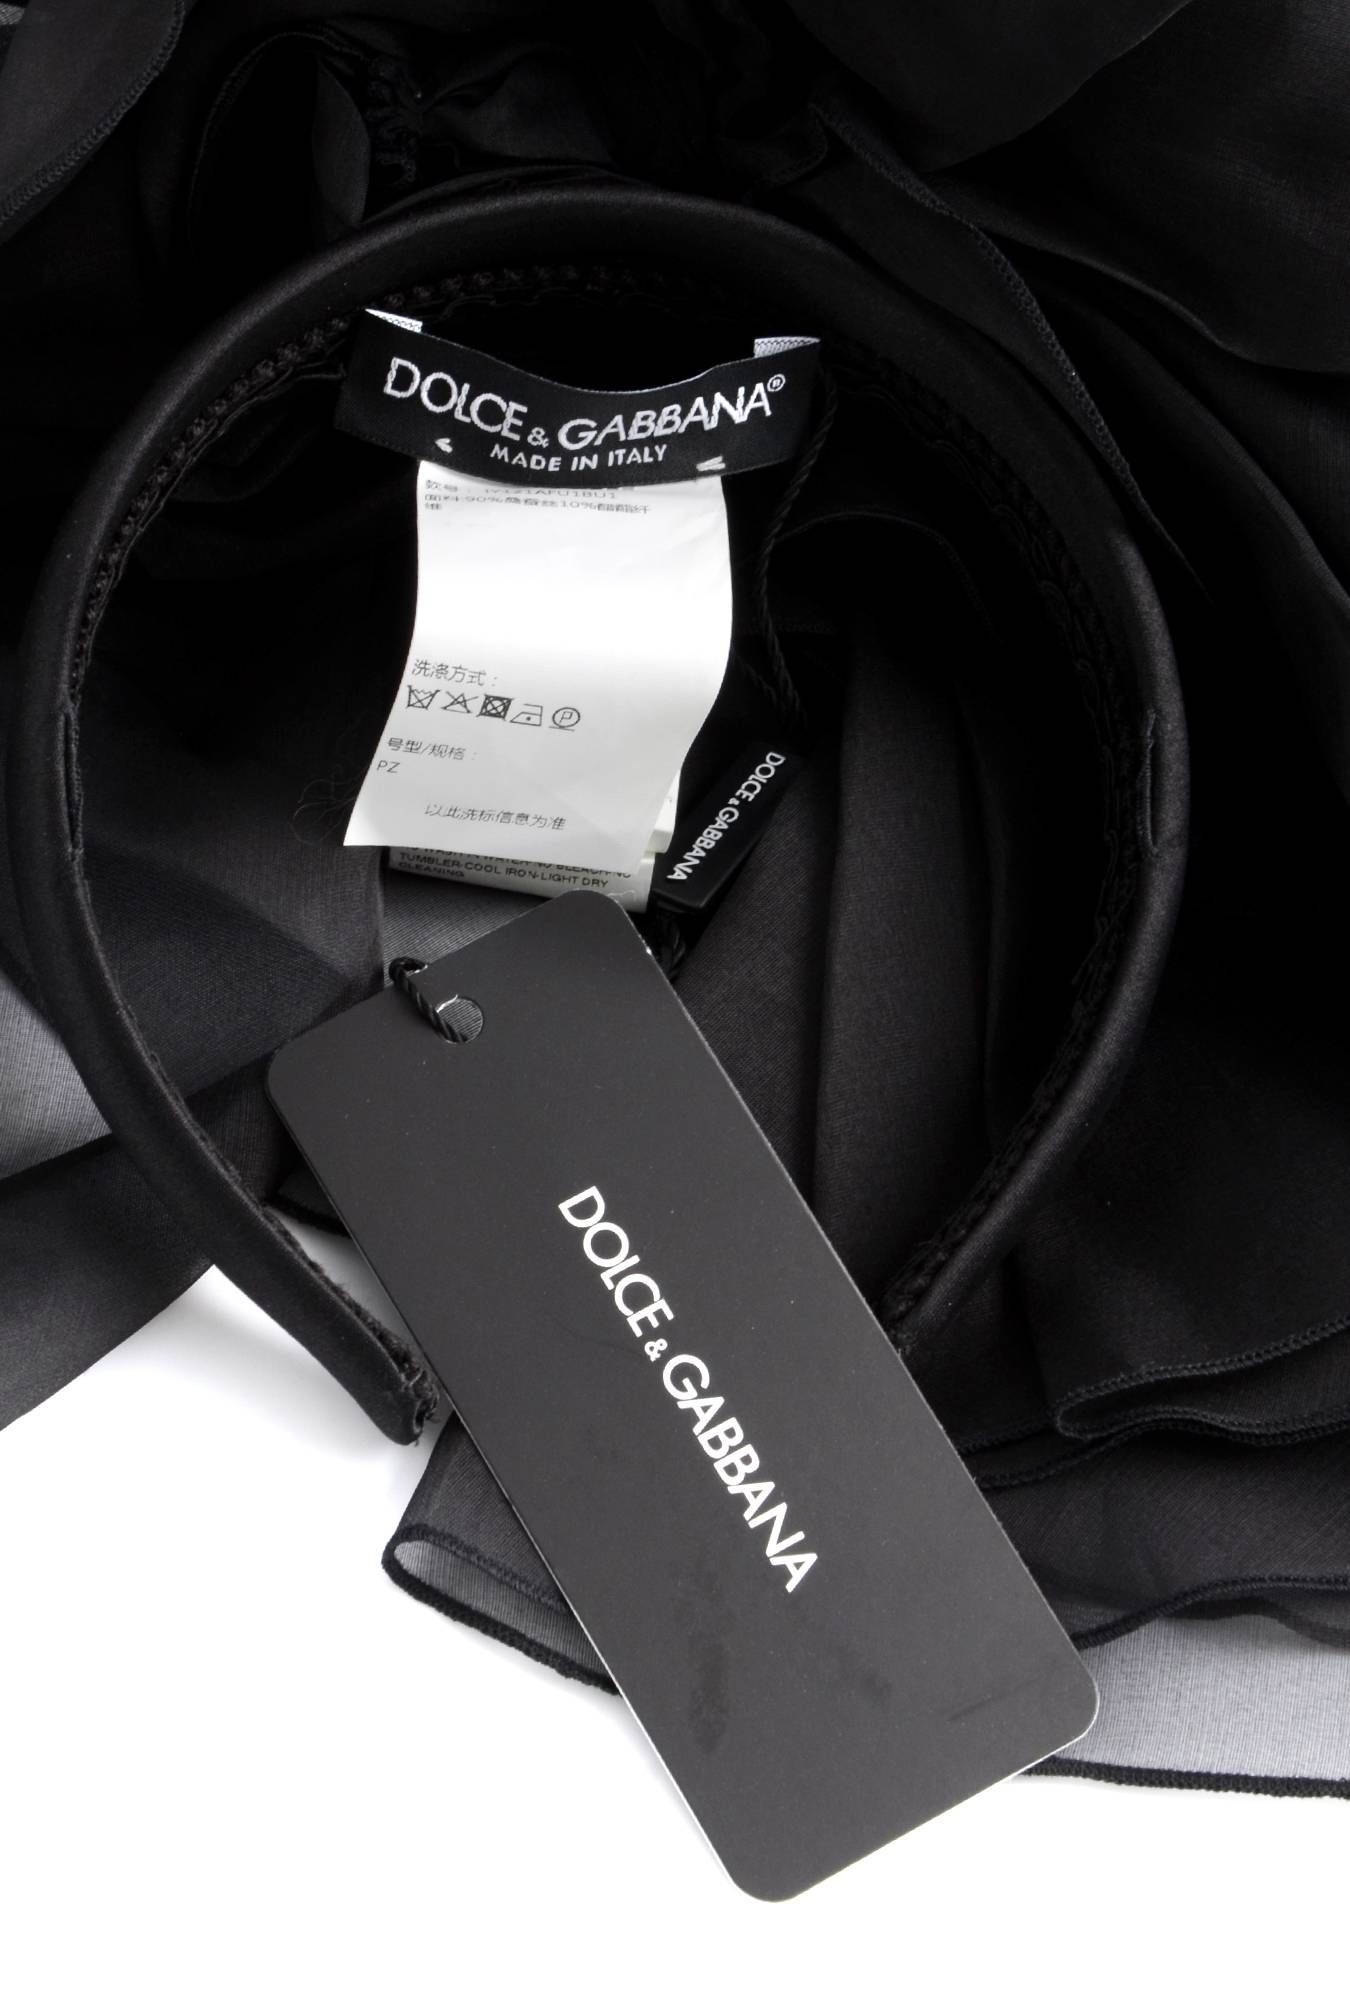 Dolce & Gabbana Women Headband
IY121A FU1BU
90% Silk, 10% Acetate